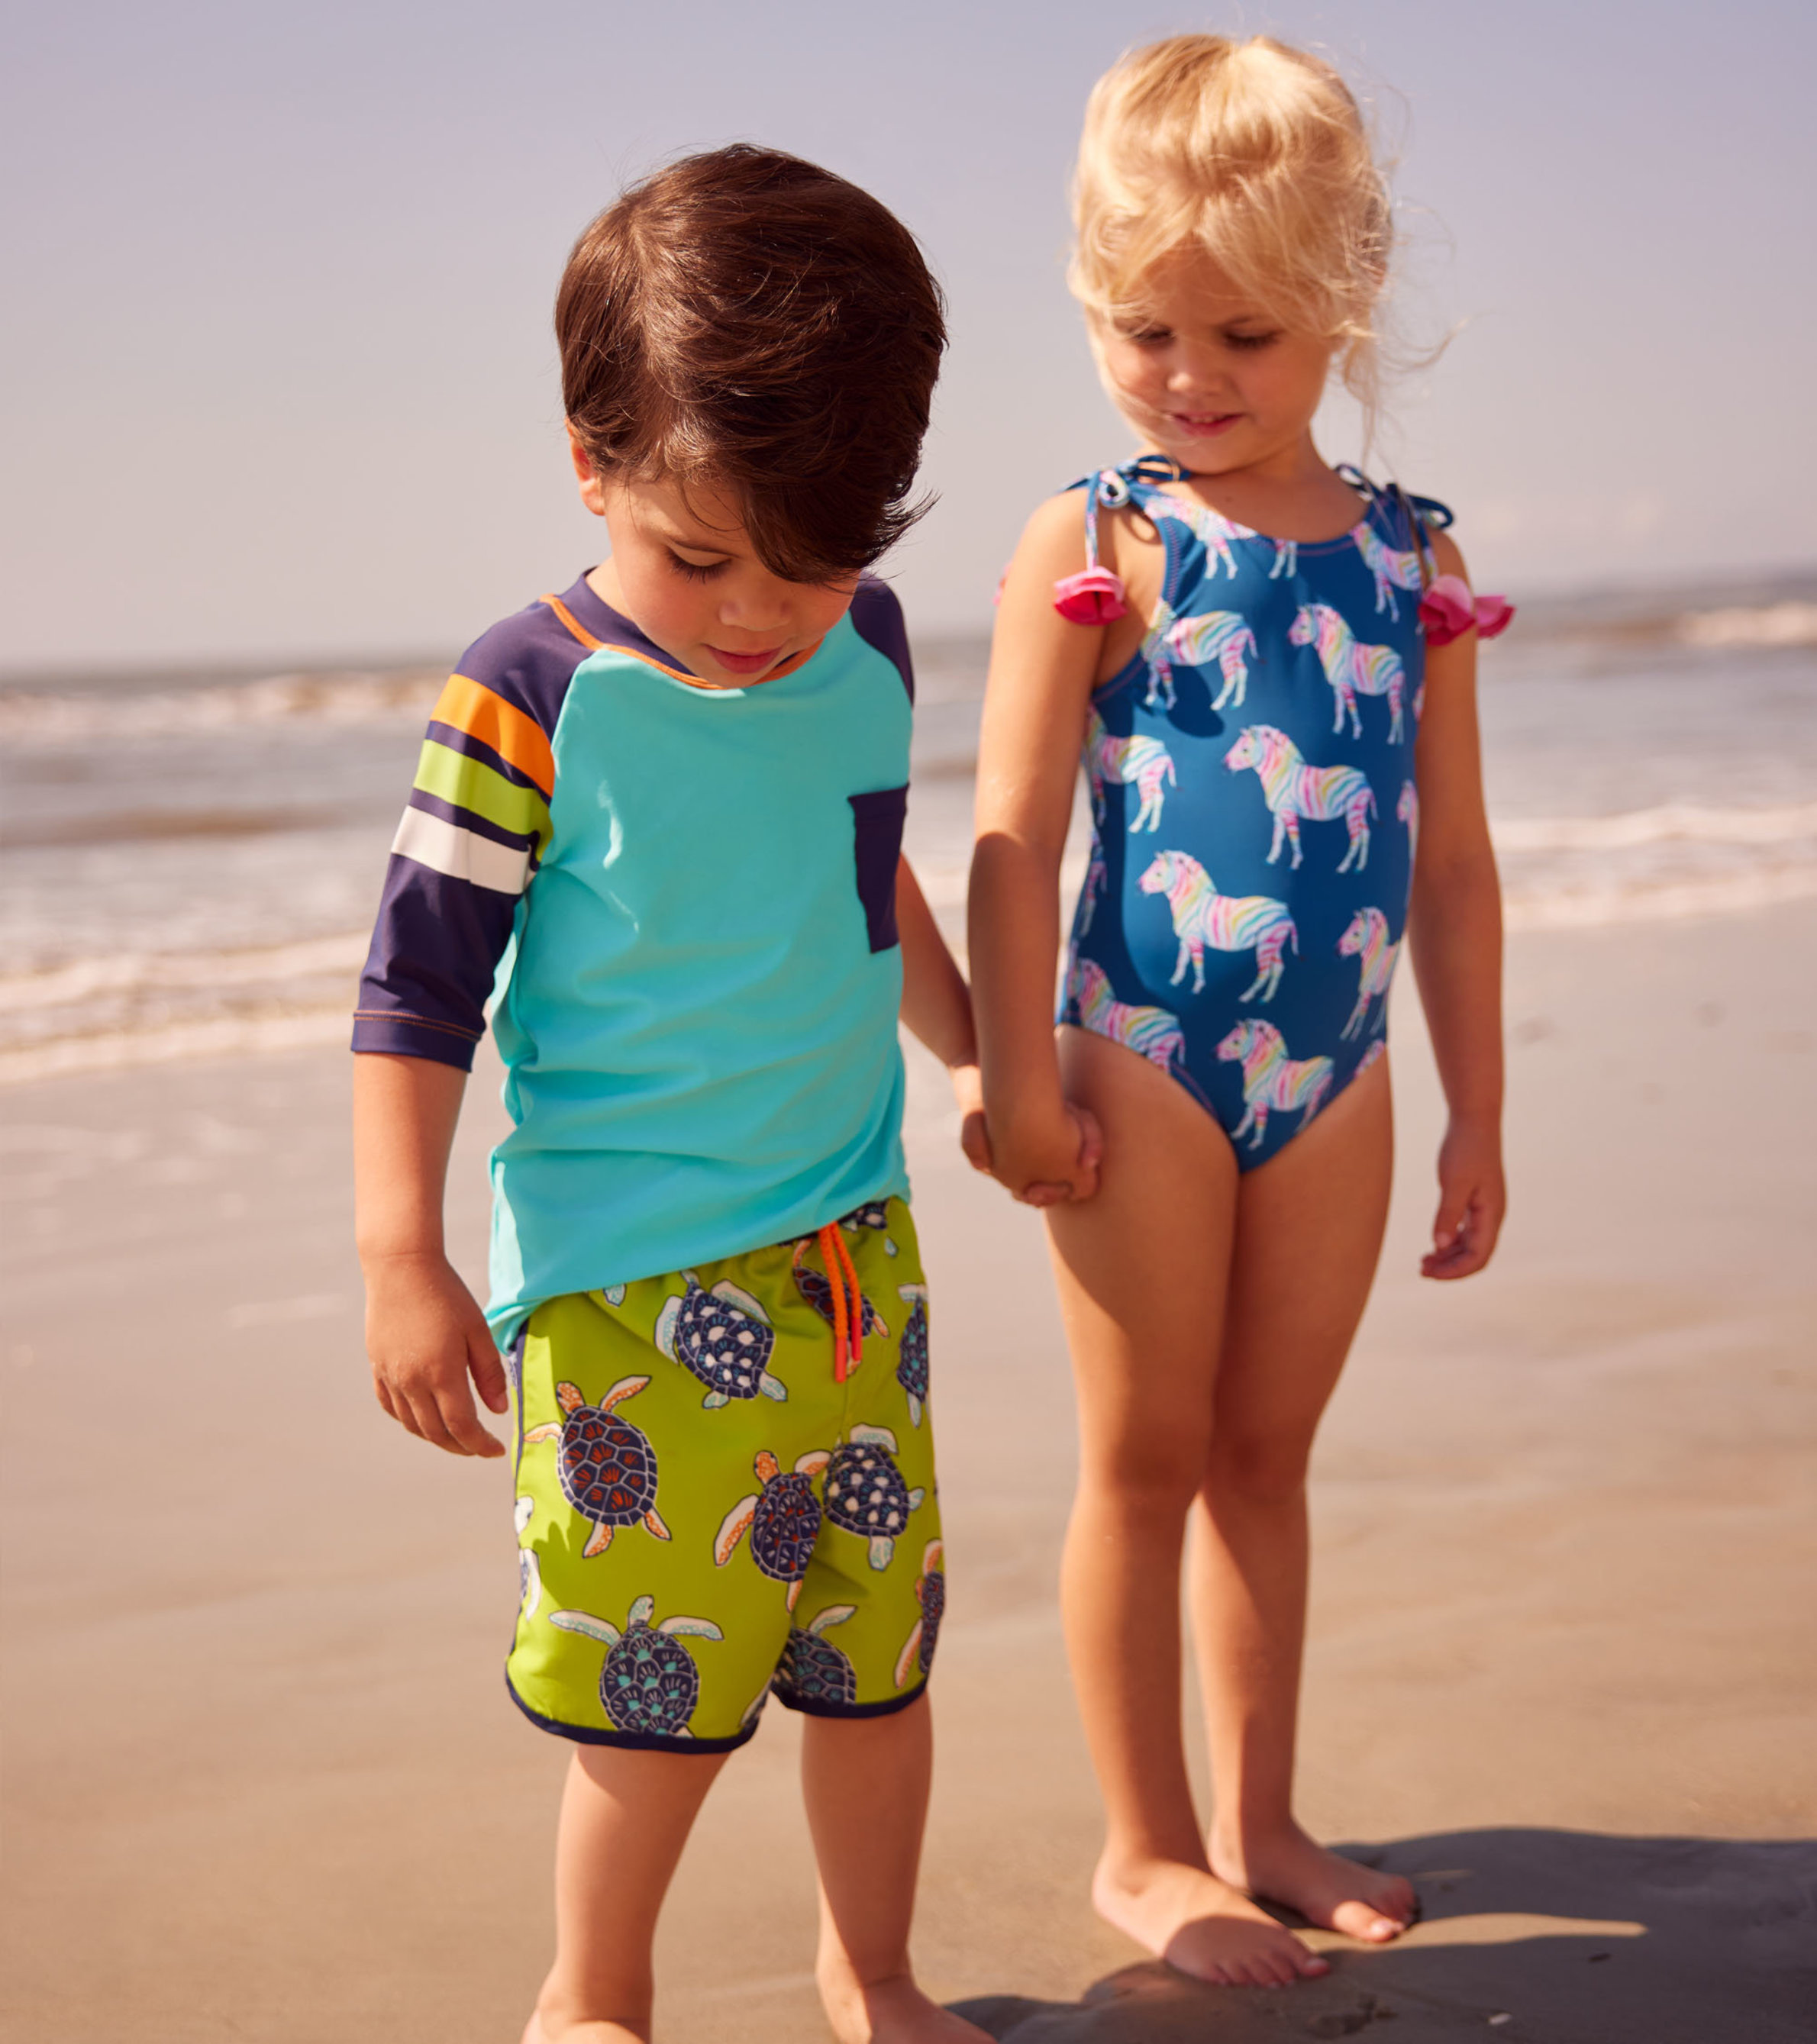 取寄) ハットレイ キッズ ガールズ レインボー ストライプ スイム ショーツ (トドラー リトル キッズ ビッグ キッズ) Hatley Kids  girls Hatley Kids Rainbow Stripes Swim Shorts (Toddler Little Kids Big  Kids) Purple - フィットネス水着